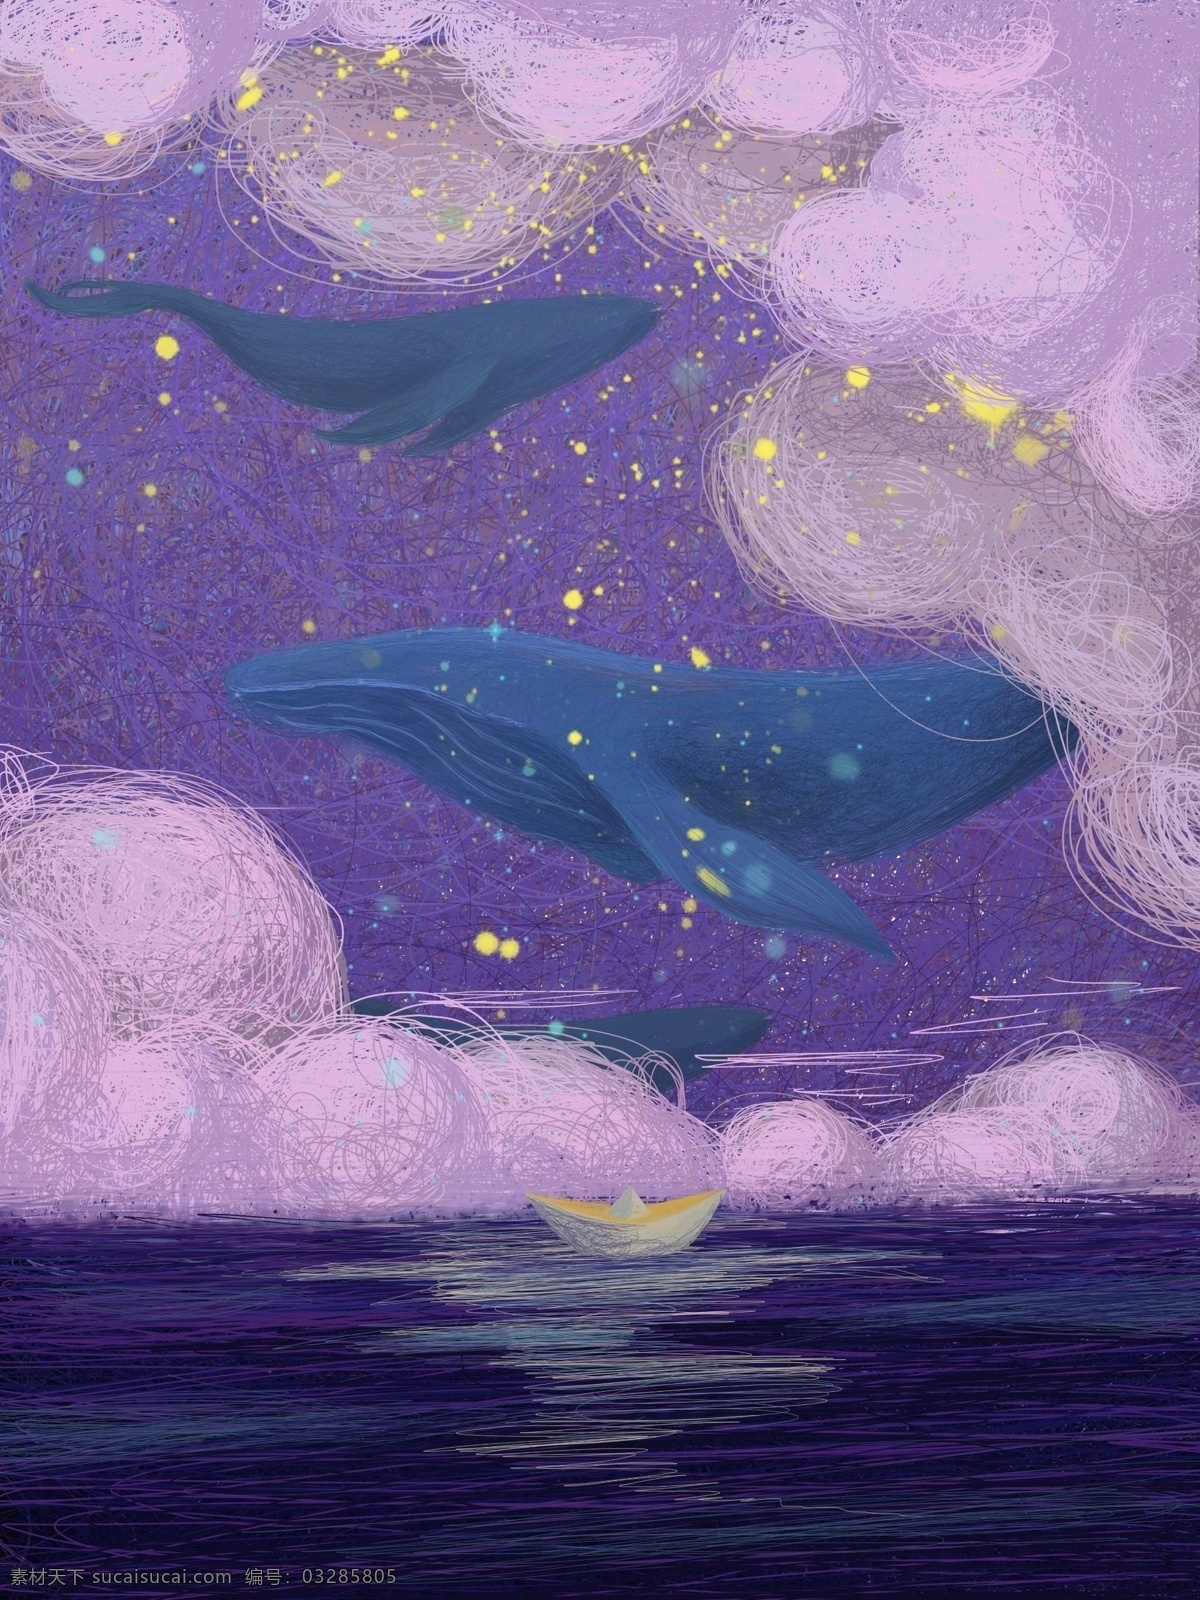 梦幻 浪漫 紫色 大海 风景 背景 紫色背景 鲸鱼 广告背景 大海风景 手绘背景 卡通背景 插画背景